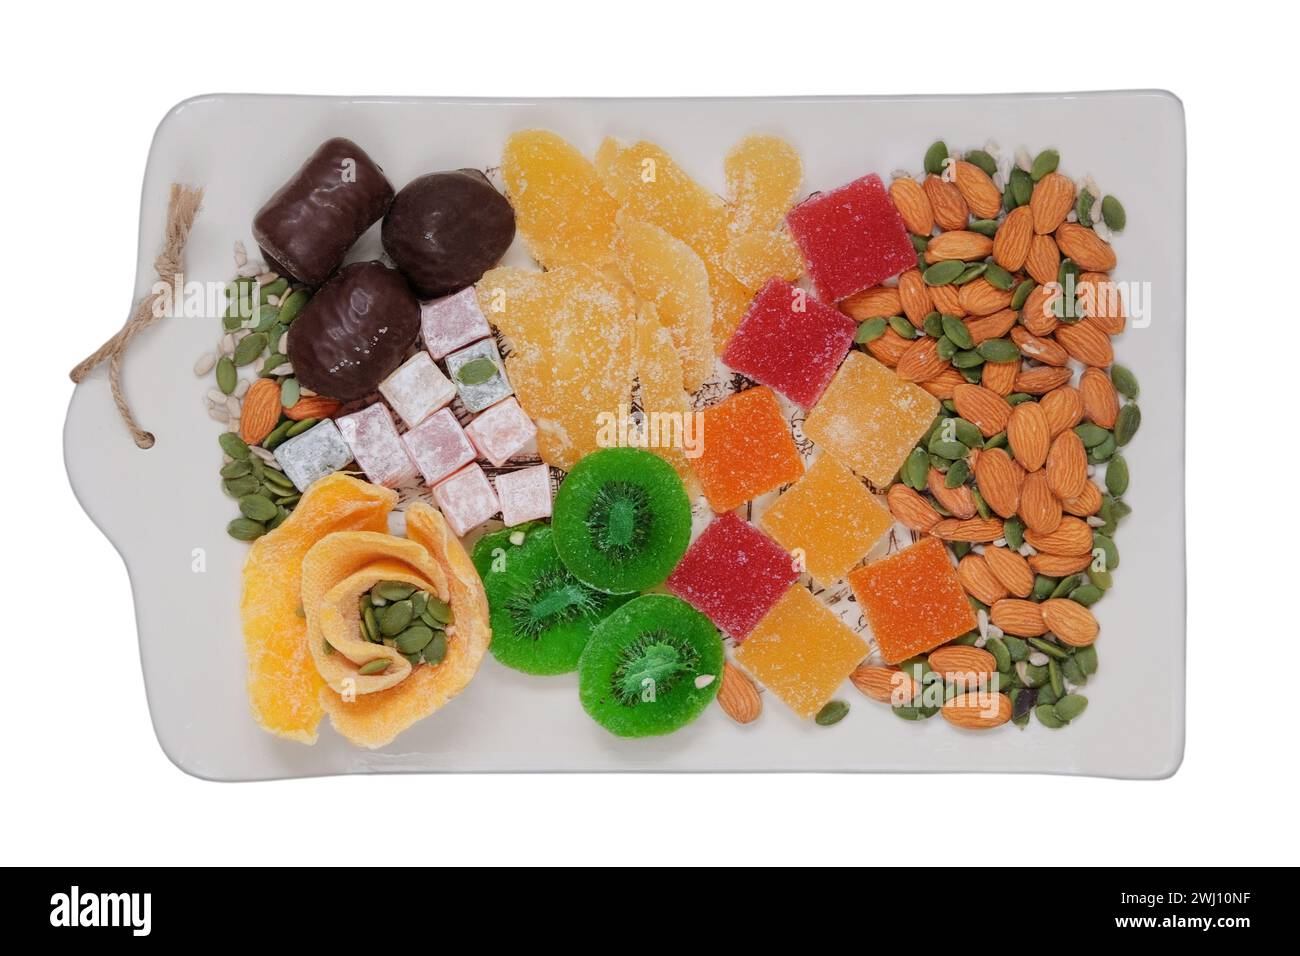 Desserts sucrés dans l'assiette pour les vacances. Marmelade, fruits confits, mangue, kiwi, noix, graines, bonbons au chocolat et délice turc dans une assiette. Top vie Banque D'Images